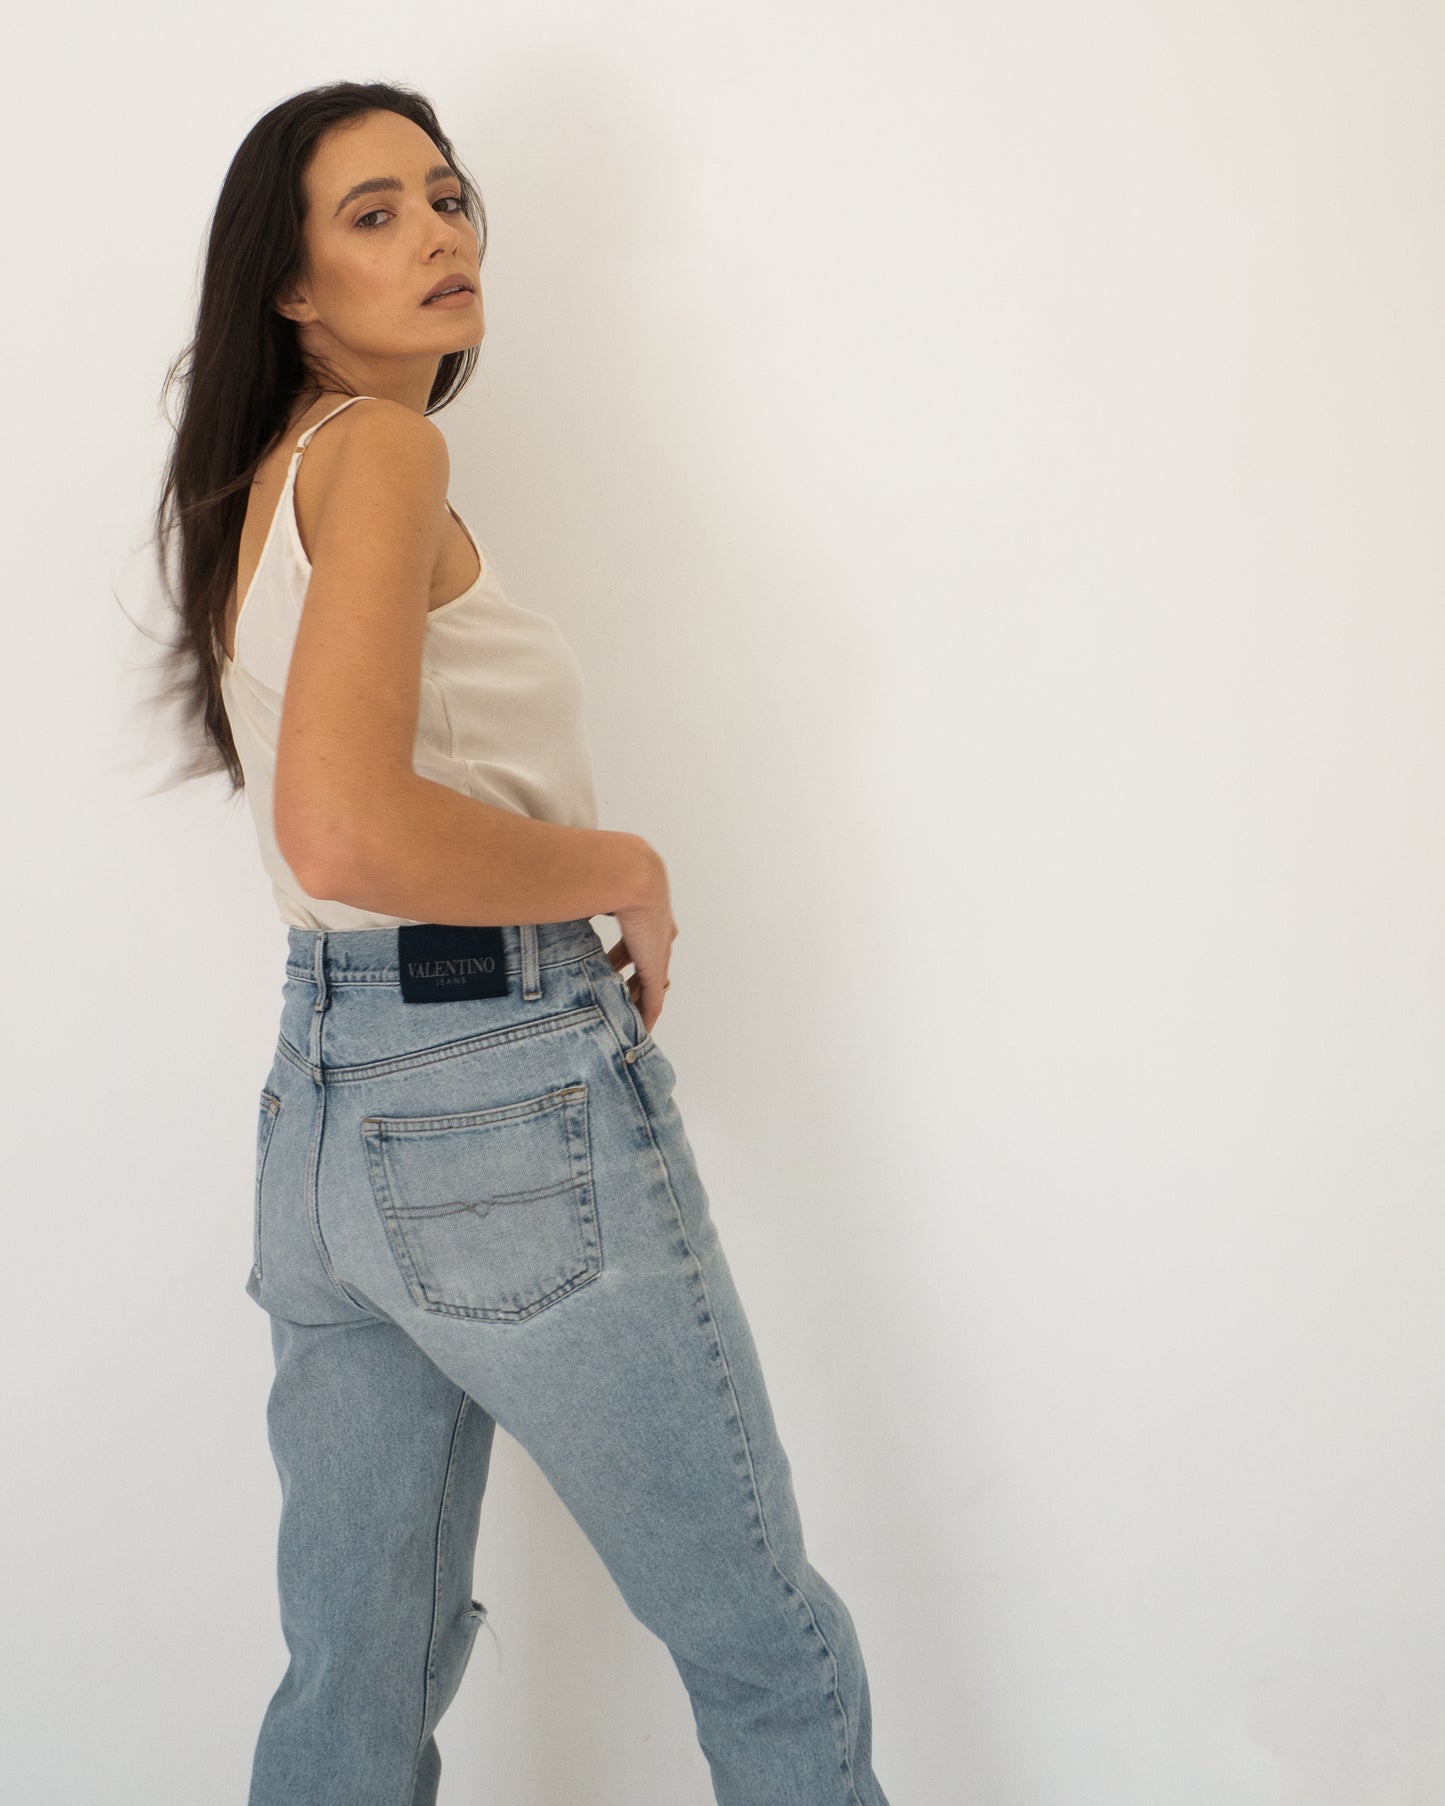 VALENTINO - Jasne jeansy